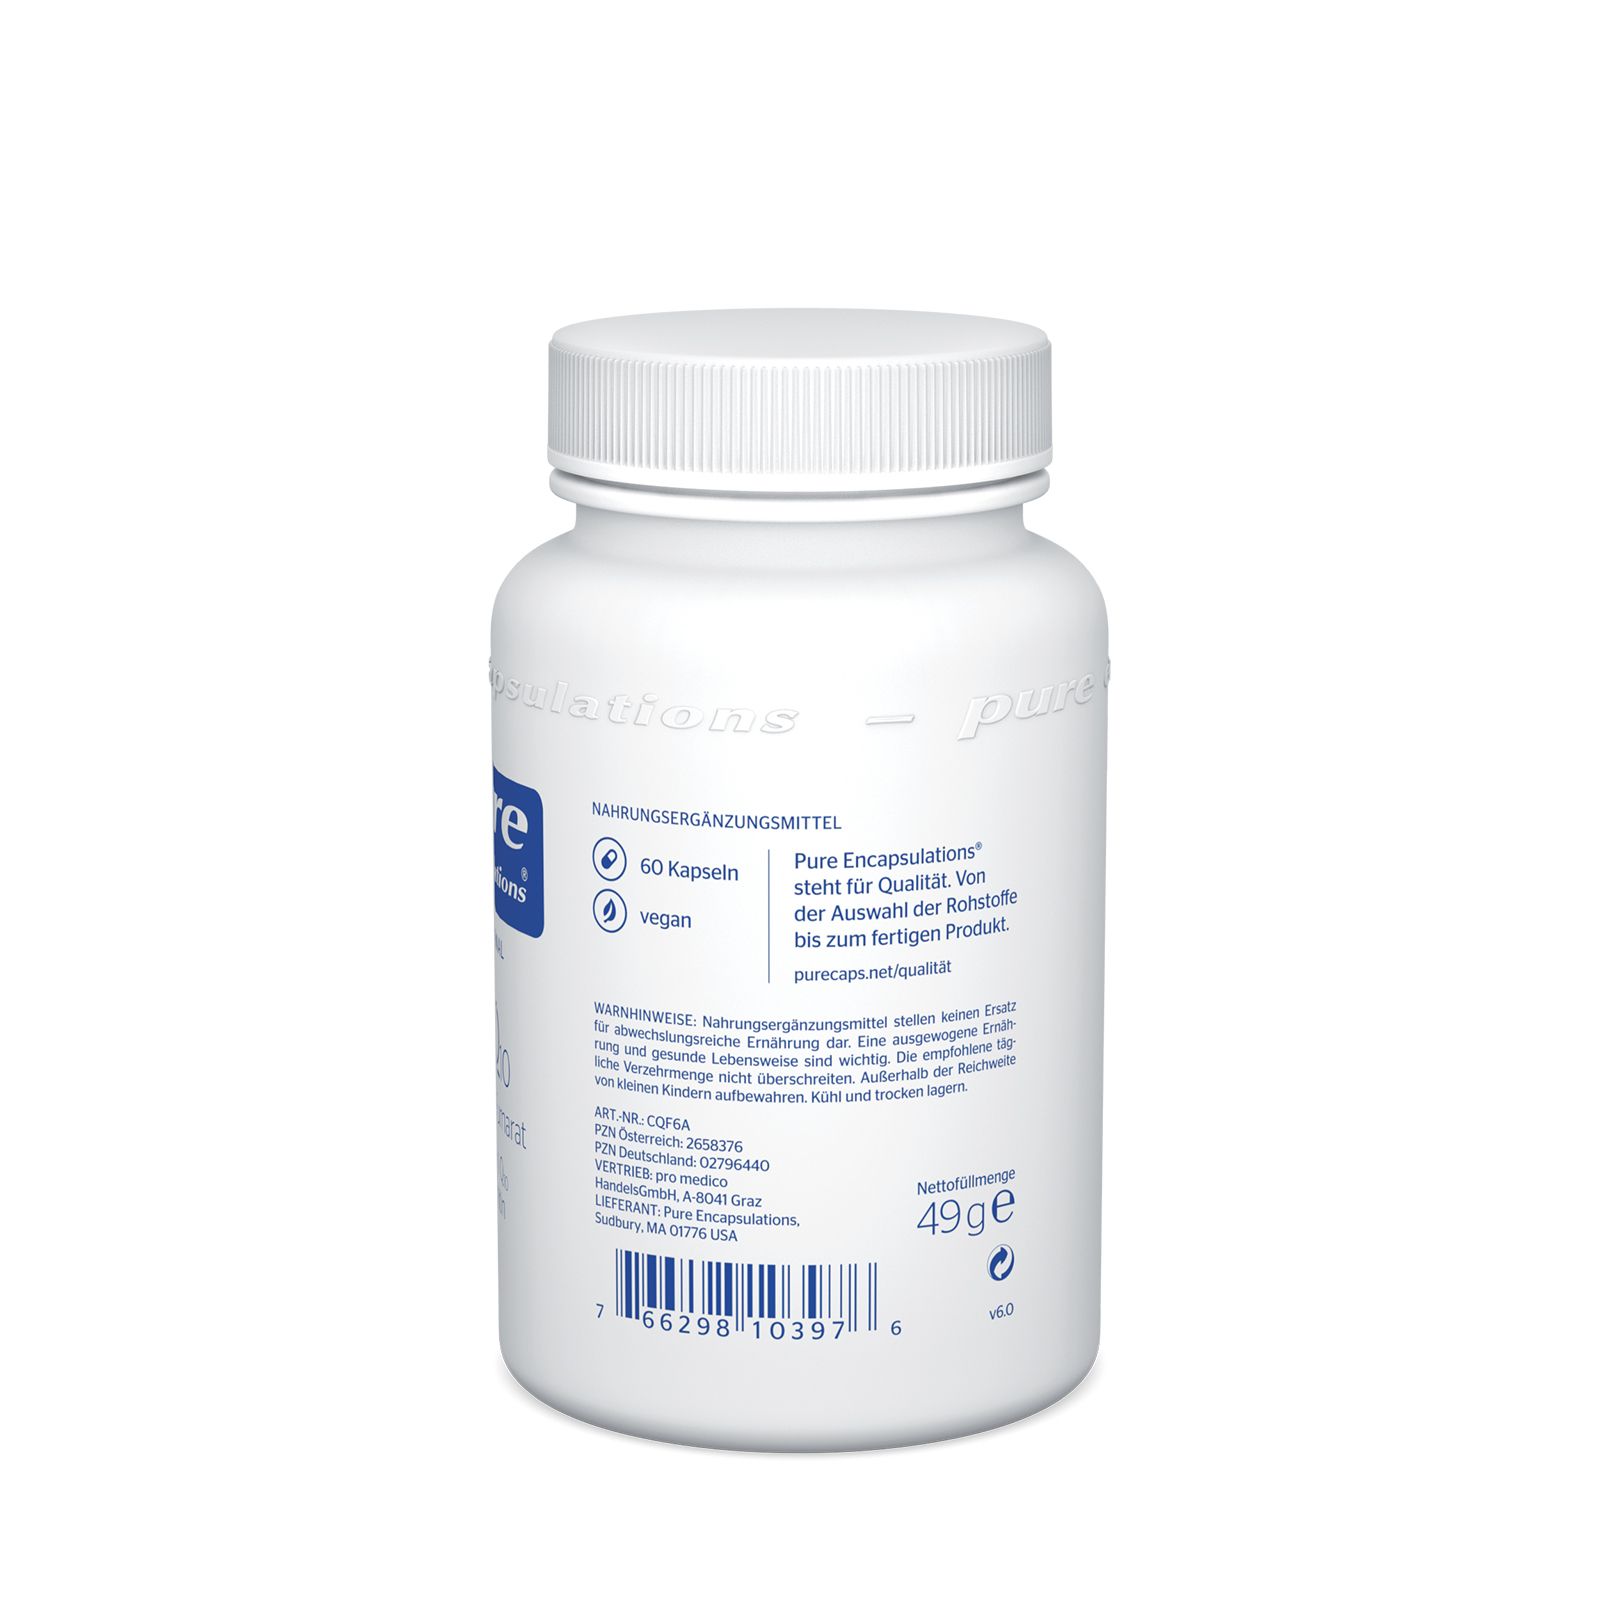 Pure Encapsulations® CoQ10 L-Carnitin Fumarat